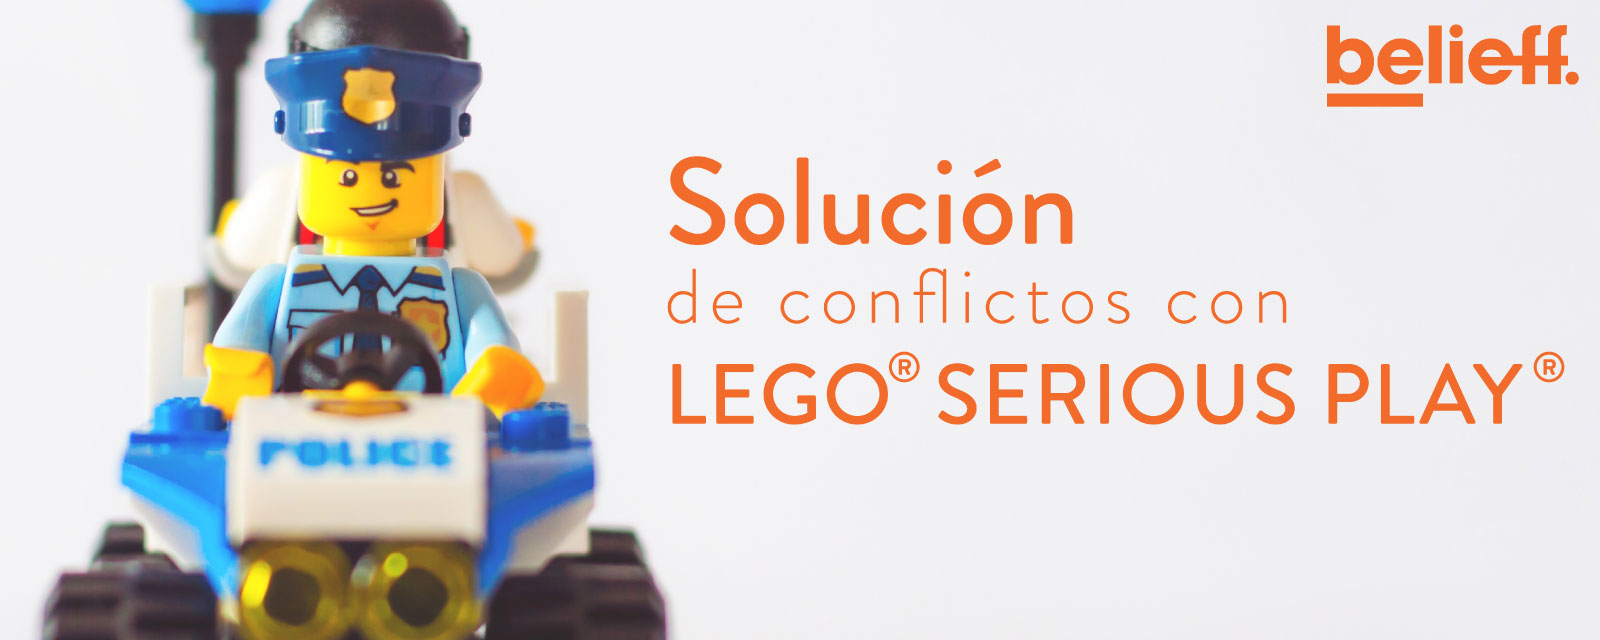 Lego® Serious Play ¿Qué es y cómo puede ayudar a mi negocio?